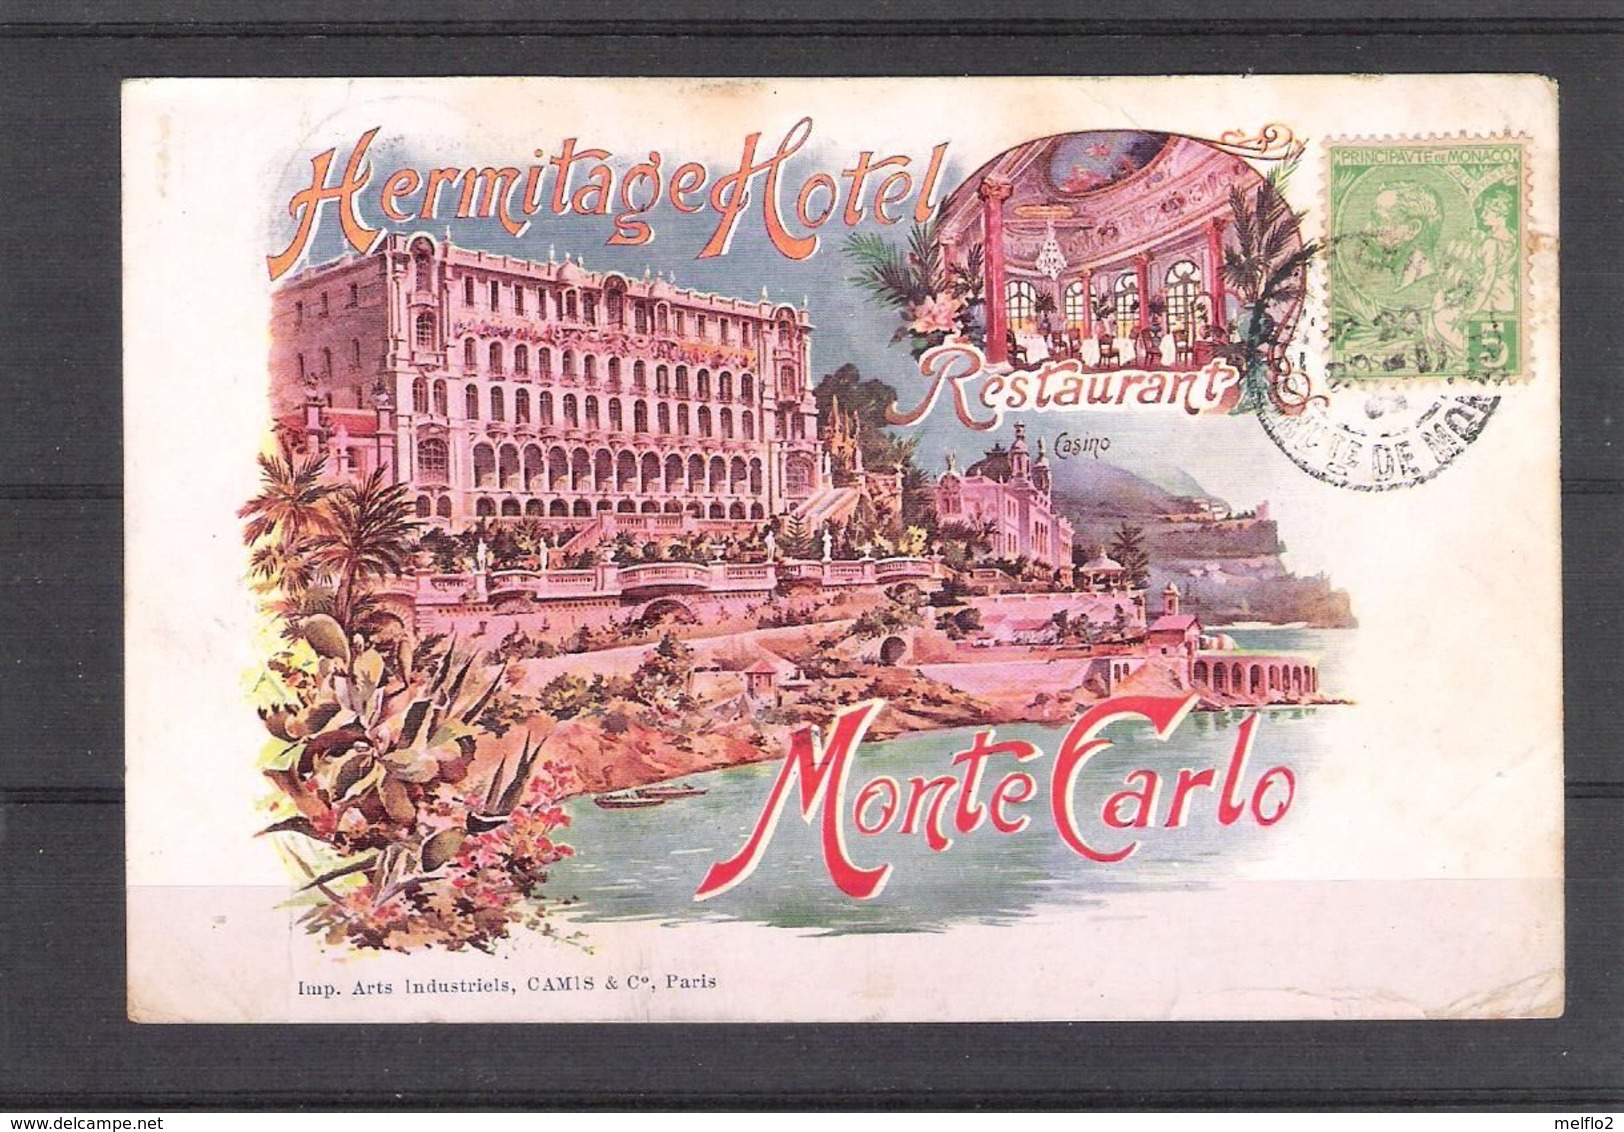 MONTE CARLO -   HERMITAGE HOTEL   RESTAURANT  - Carte Ayant Circulé Au Début Des Années 1900 - Hotels